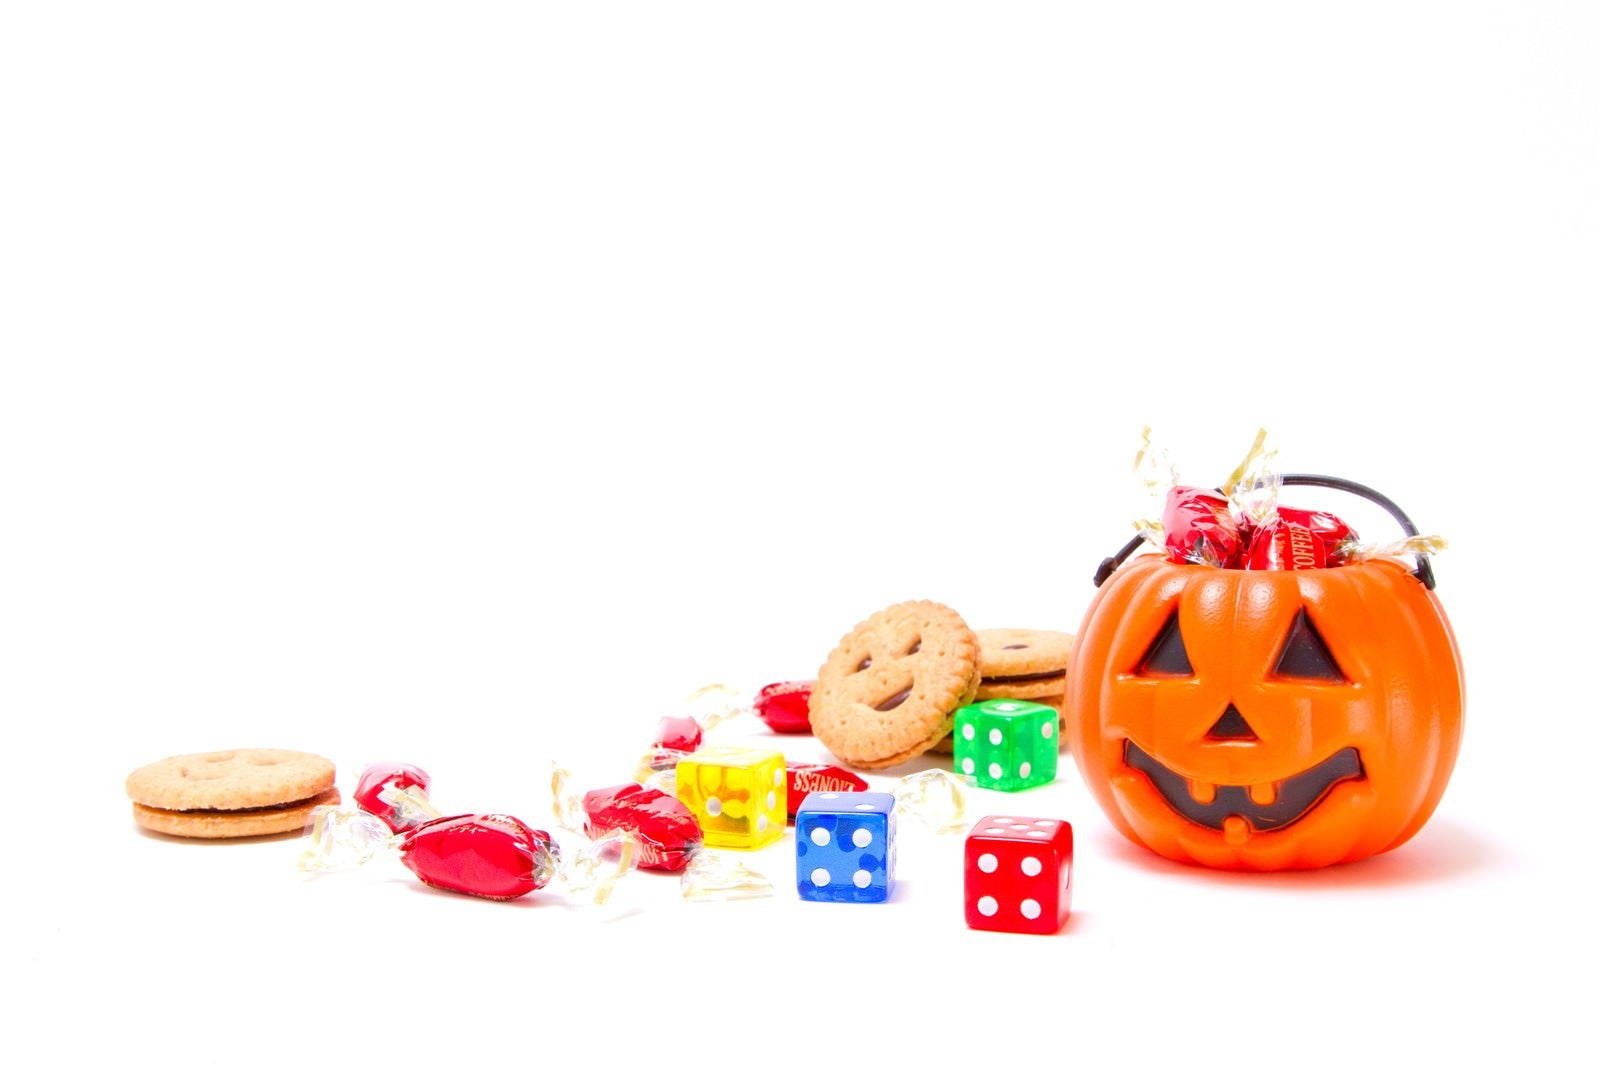 「散らばるお菓子とハロウィンのかぼちゃ」の写真